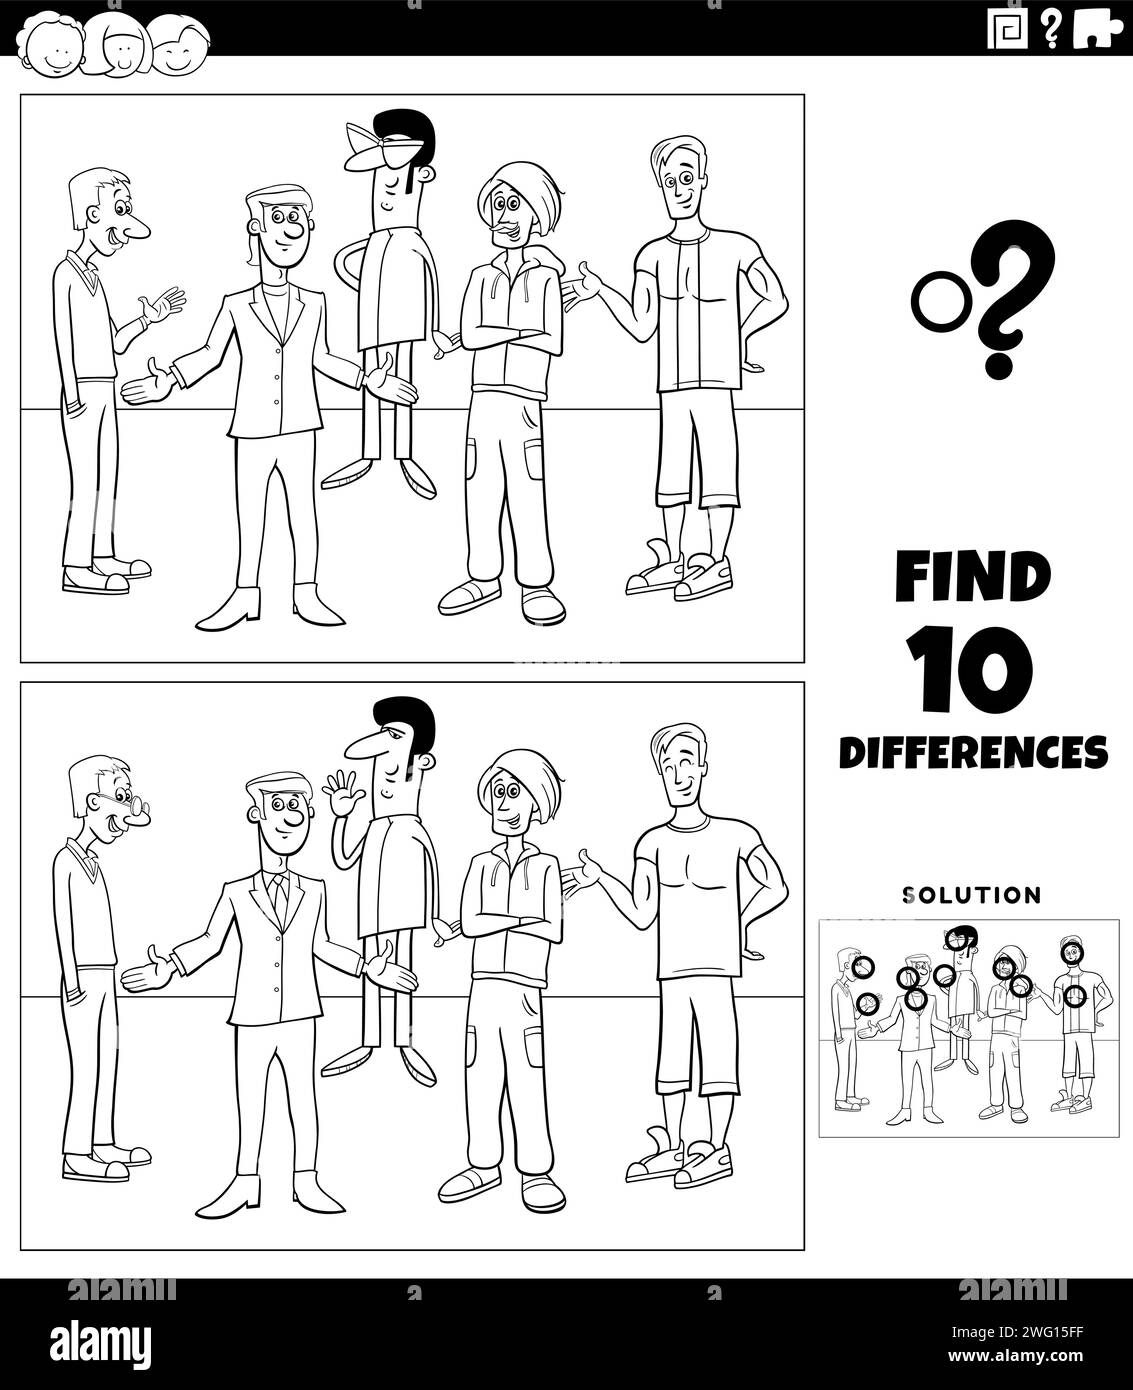 Illustration de dessin animé de trouver les différences entre les images de l'activité éducative avec des personnages de jeunes hommes coloriage de groupe Illustration de Vecteur